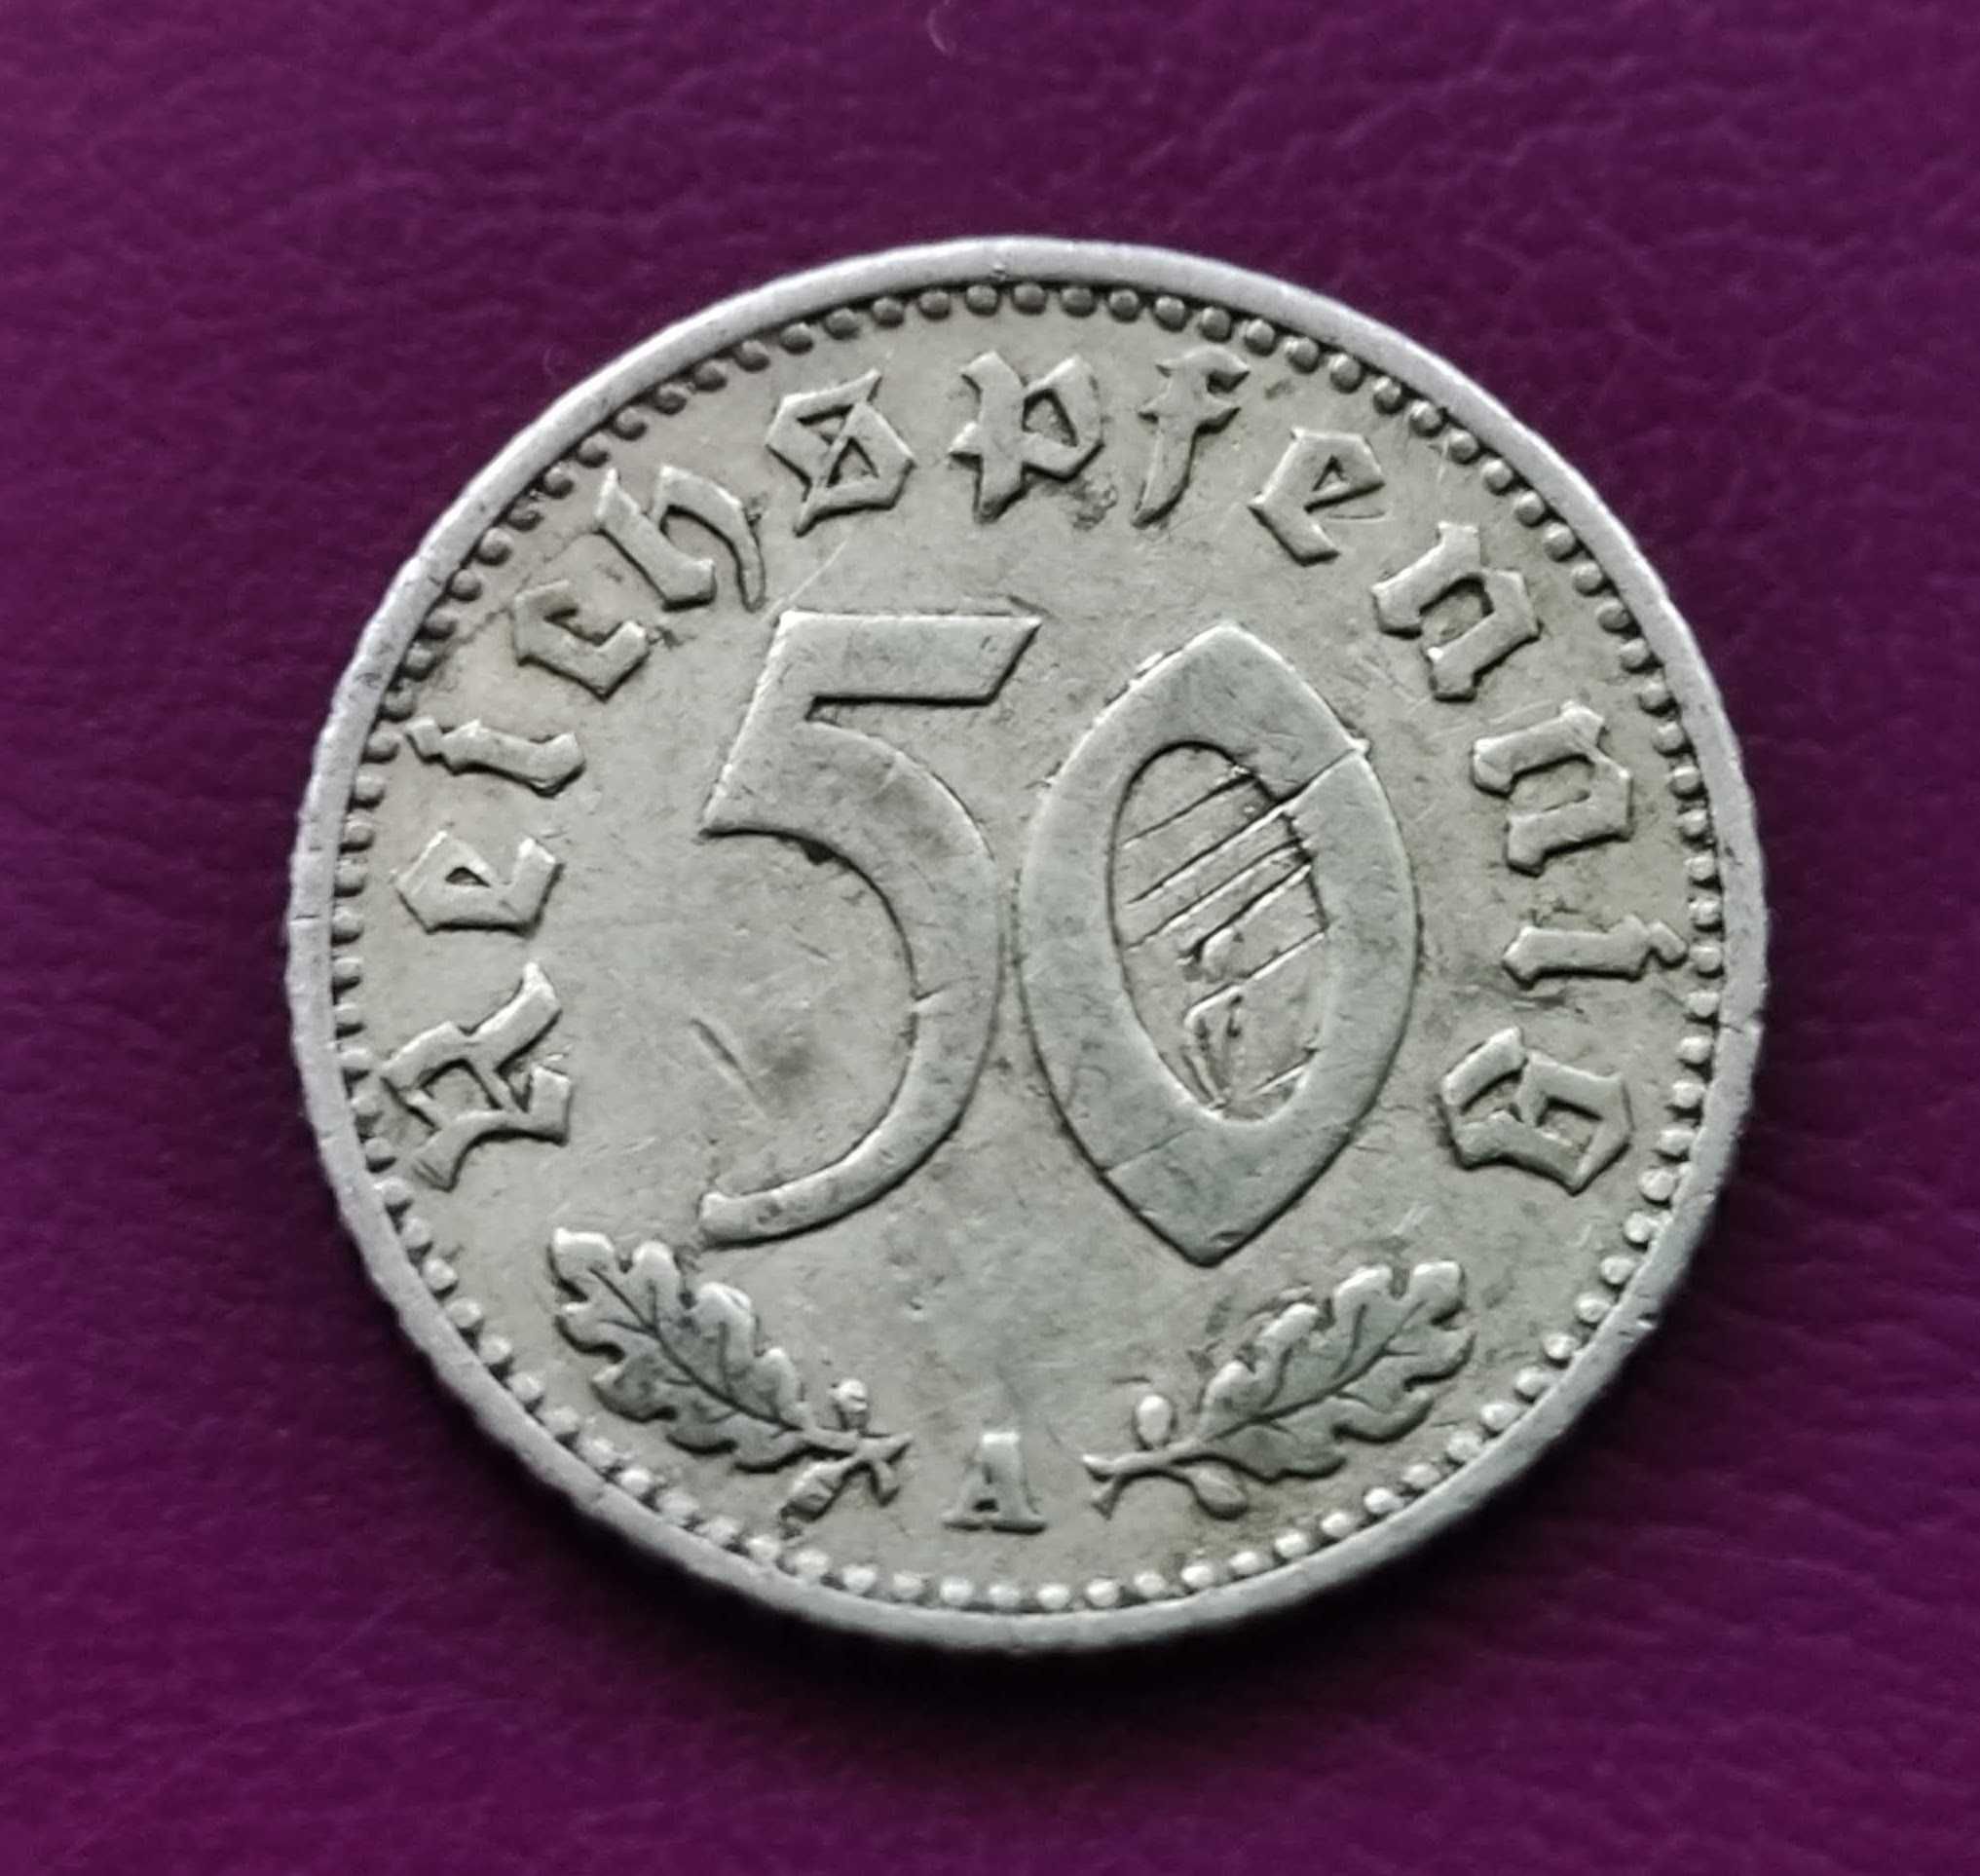 Moneta Niemcy - Trzecia Rzesza 50 reichsfenigów 1941 A - Rzadka